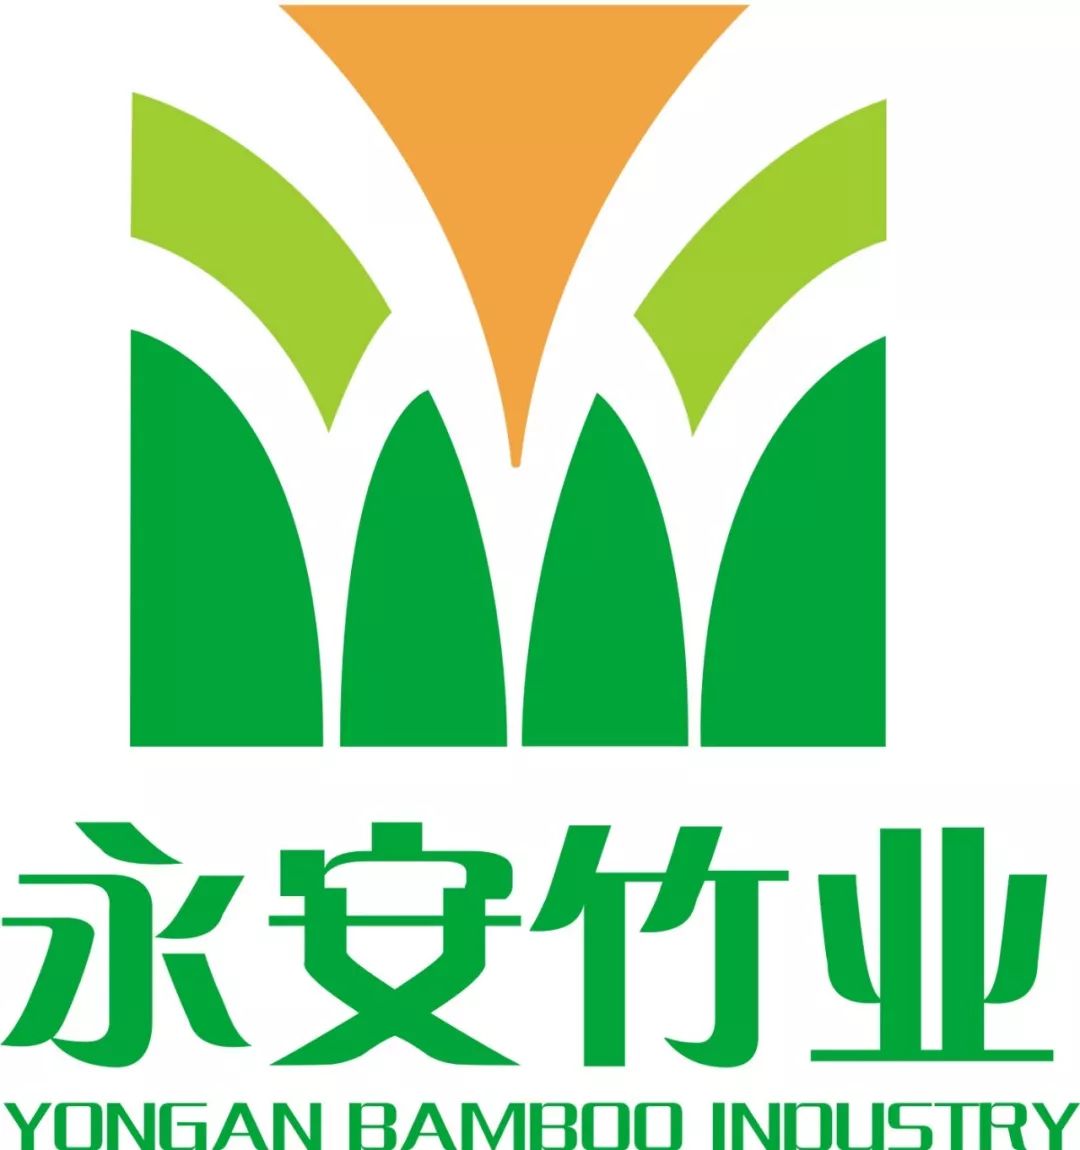 永安竹业集体商标获国家知识产权局核定批准